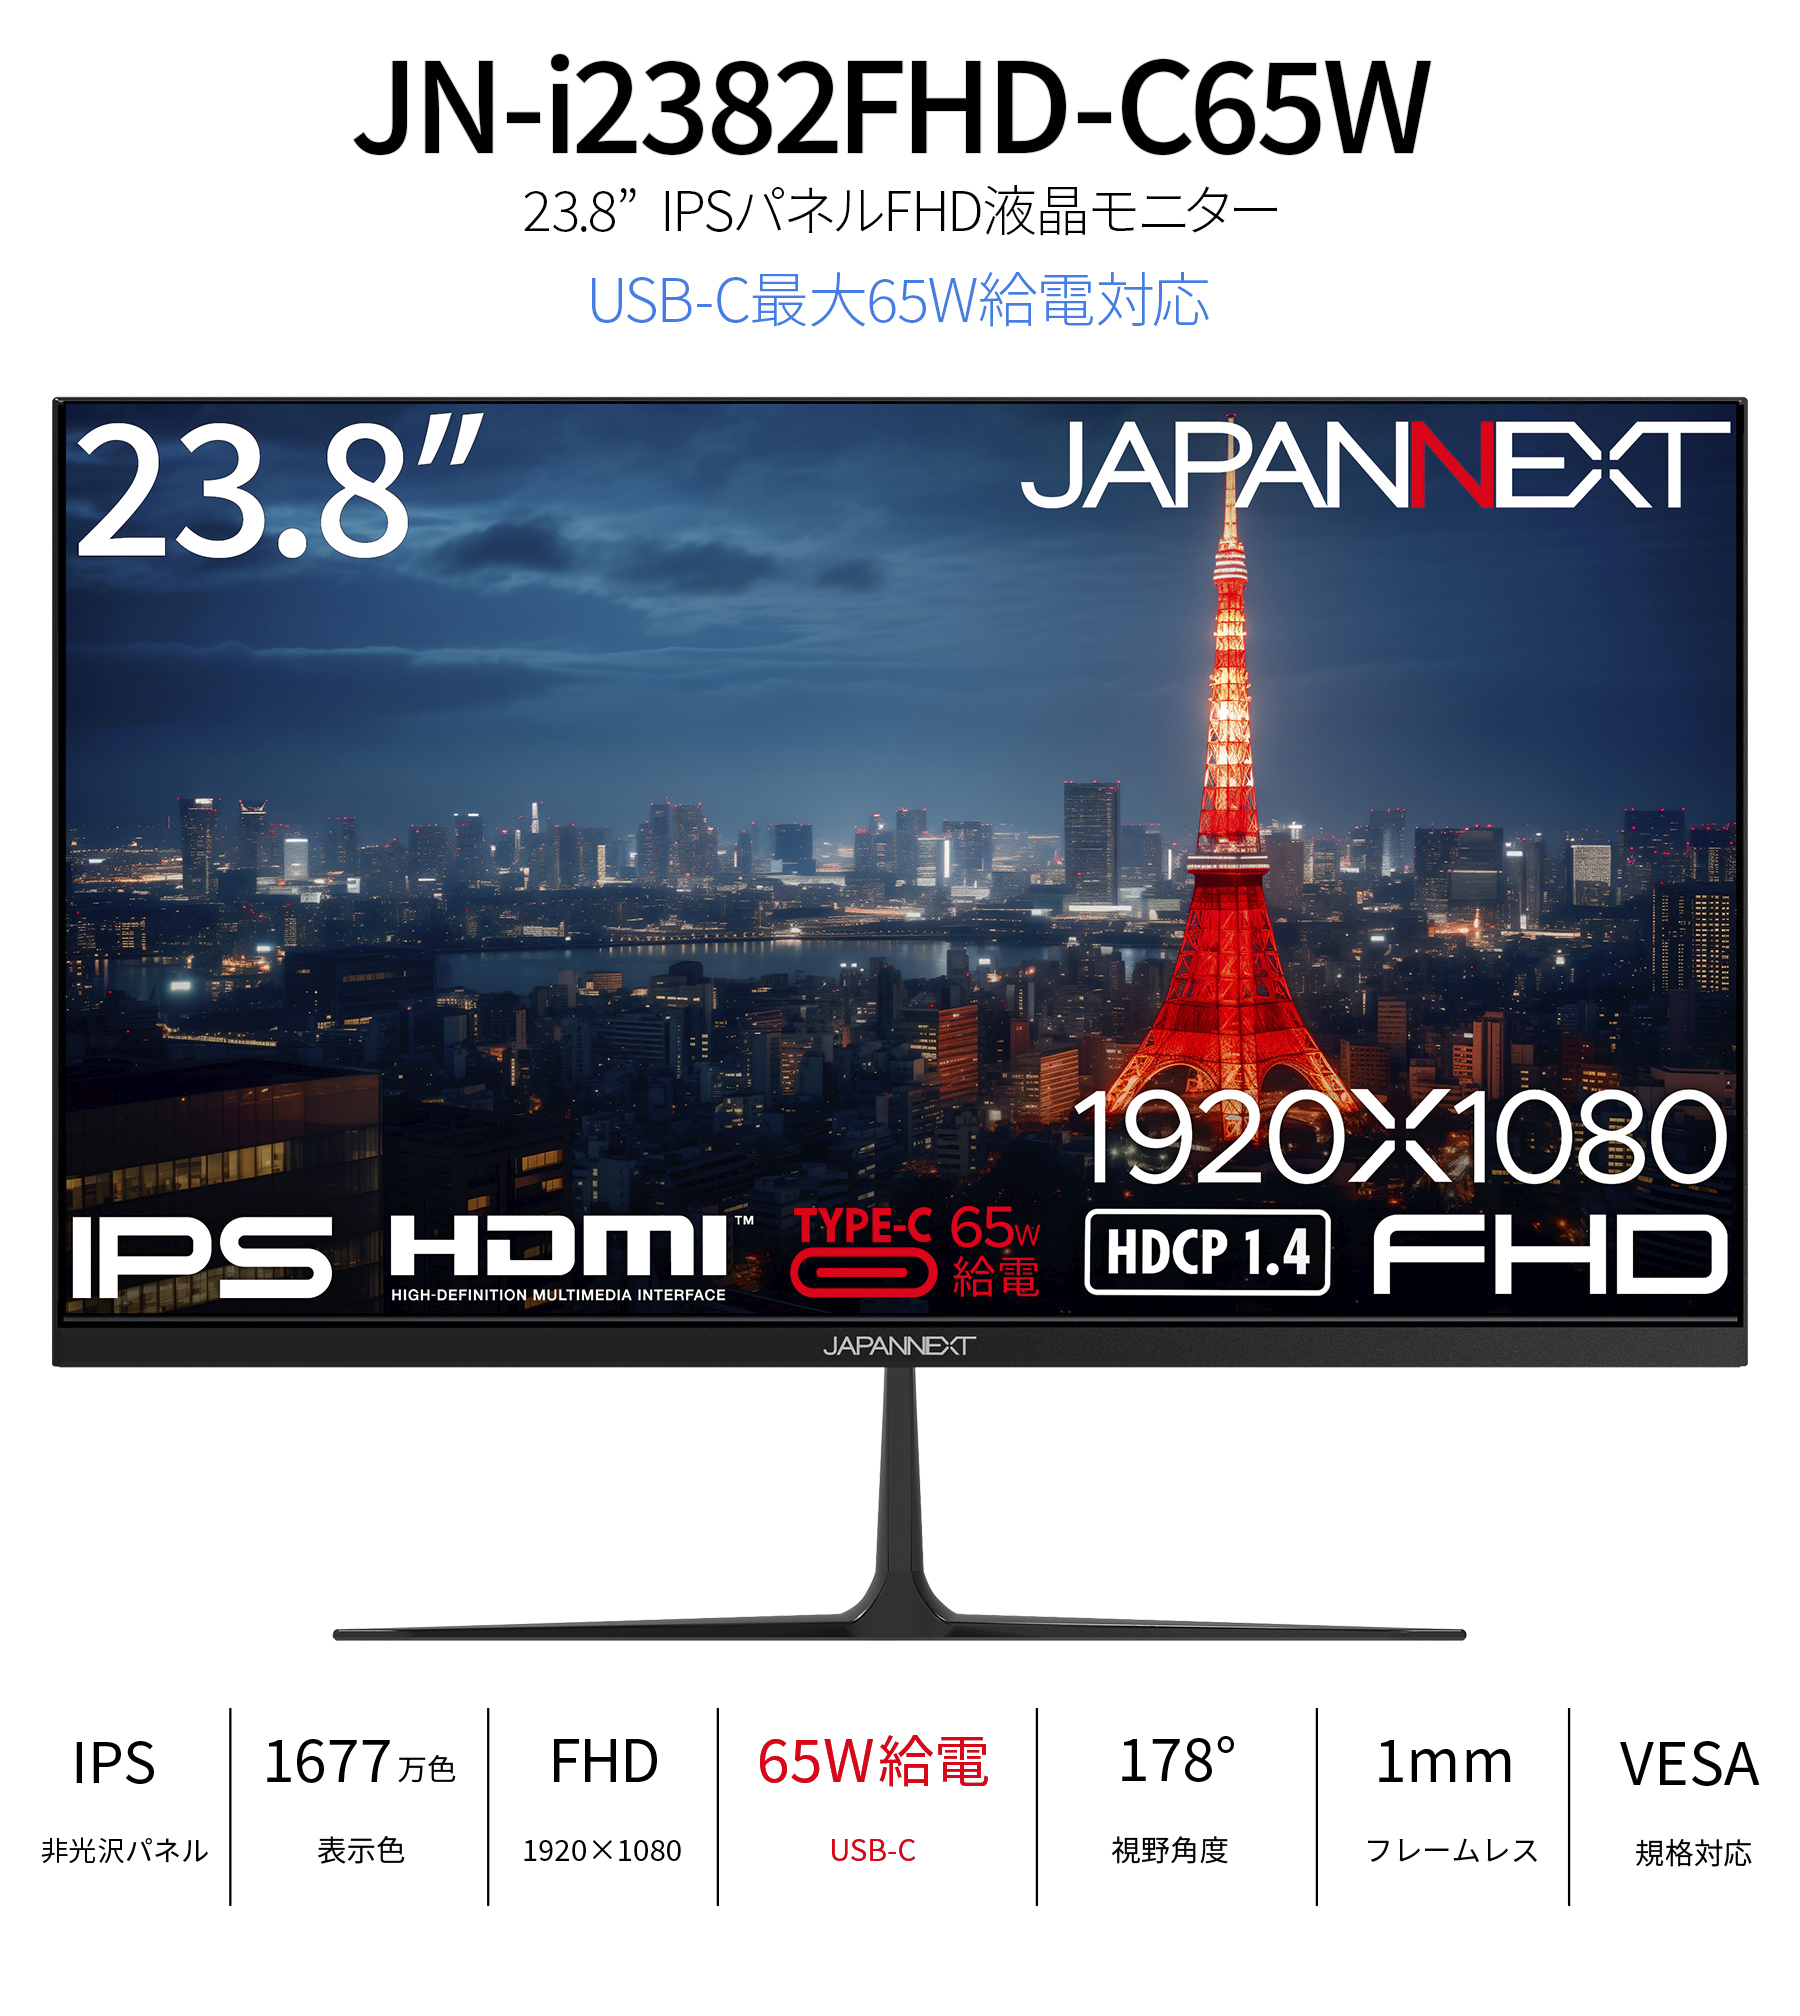 JAPANNEXT 23.8インチ IPSパネル搭載 フルHD(1920x1080)解像度 液晶